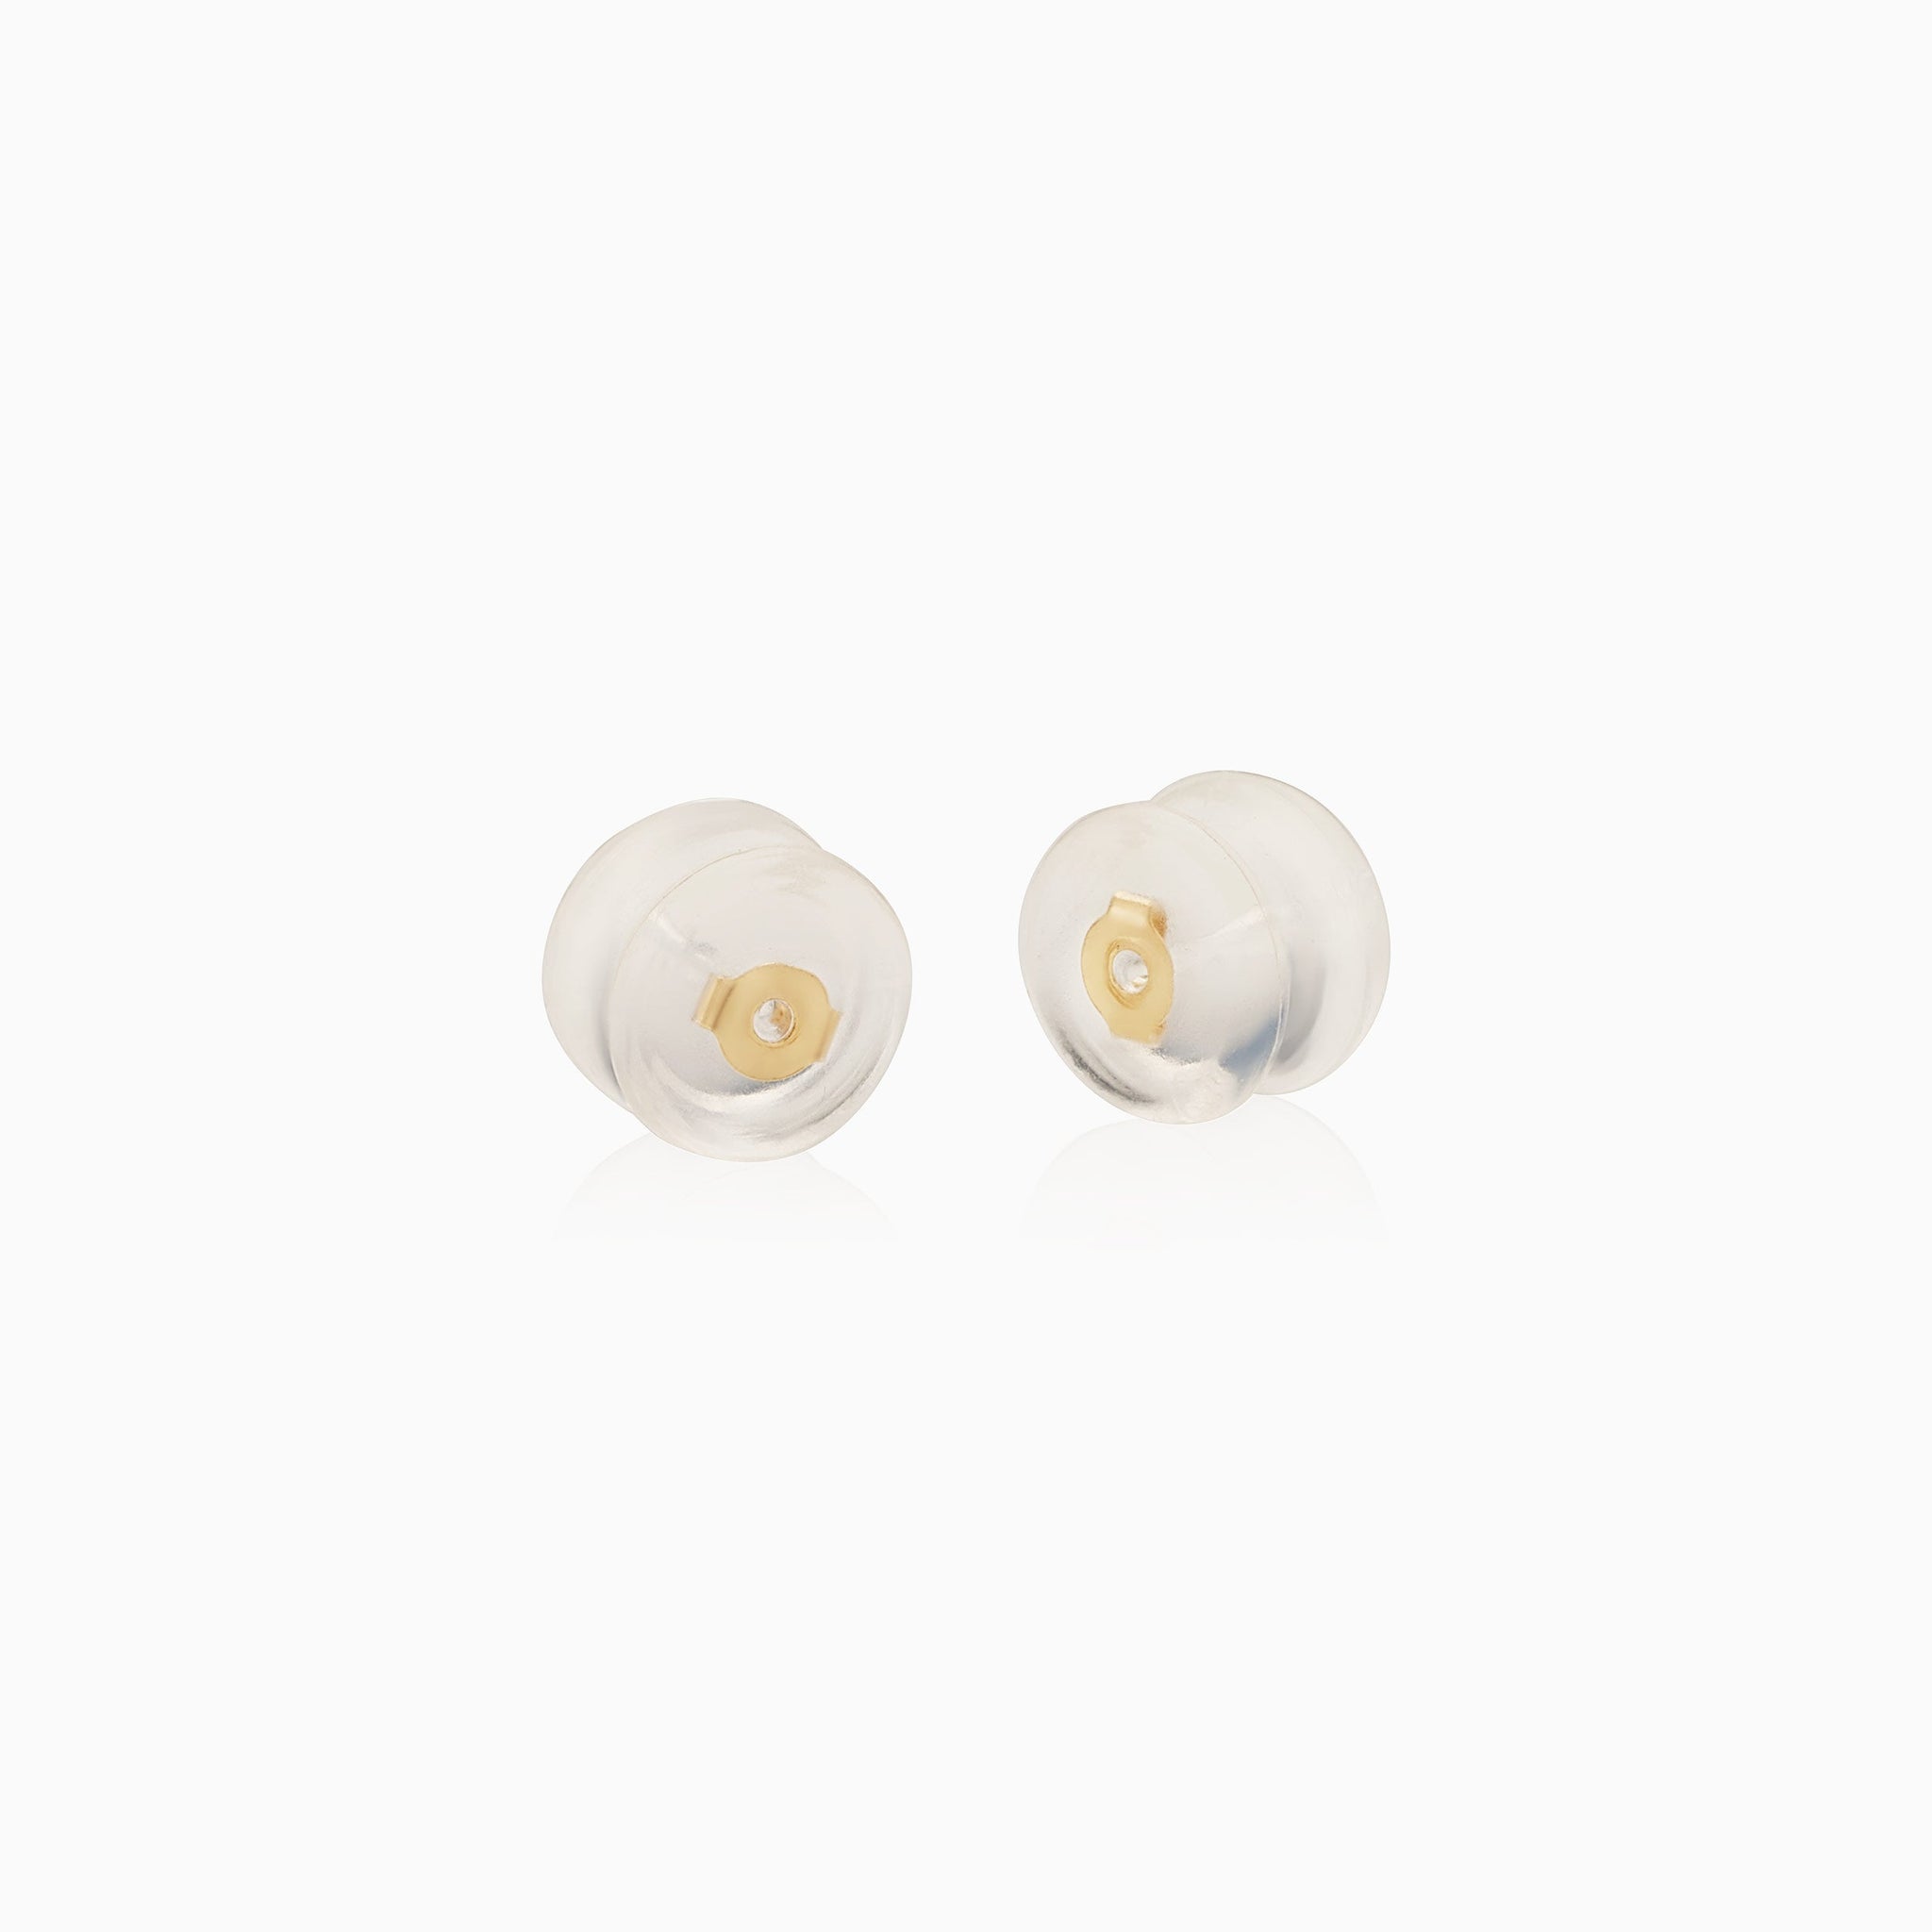 18k White Gold Earring Backings Pair 